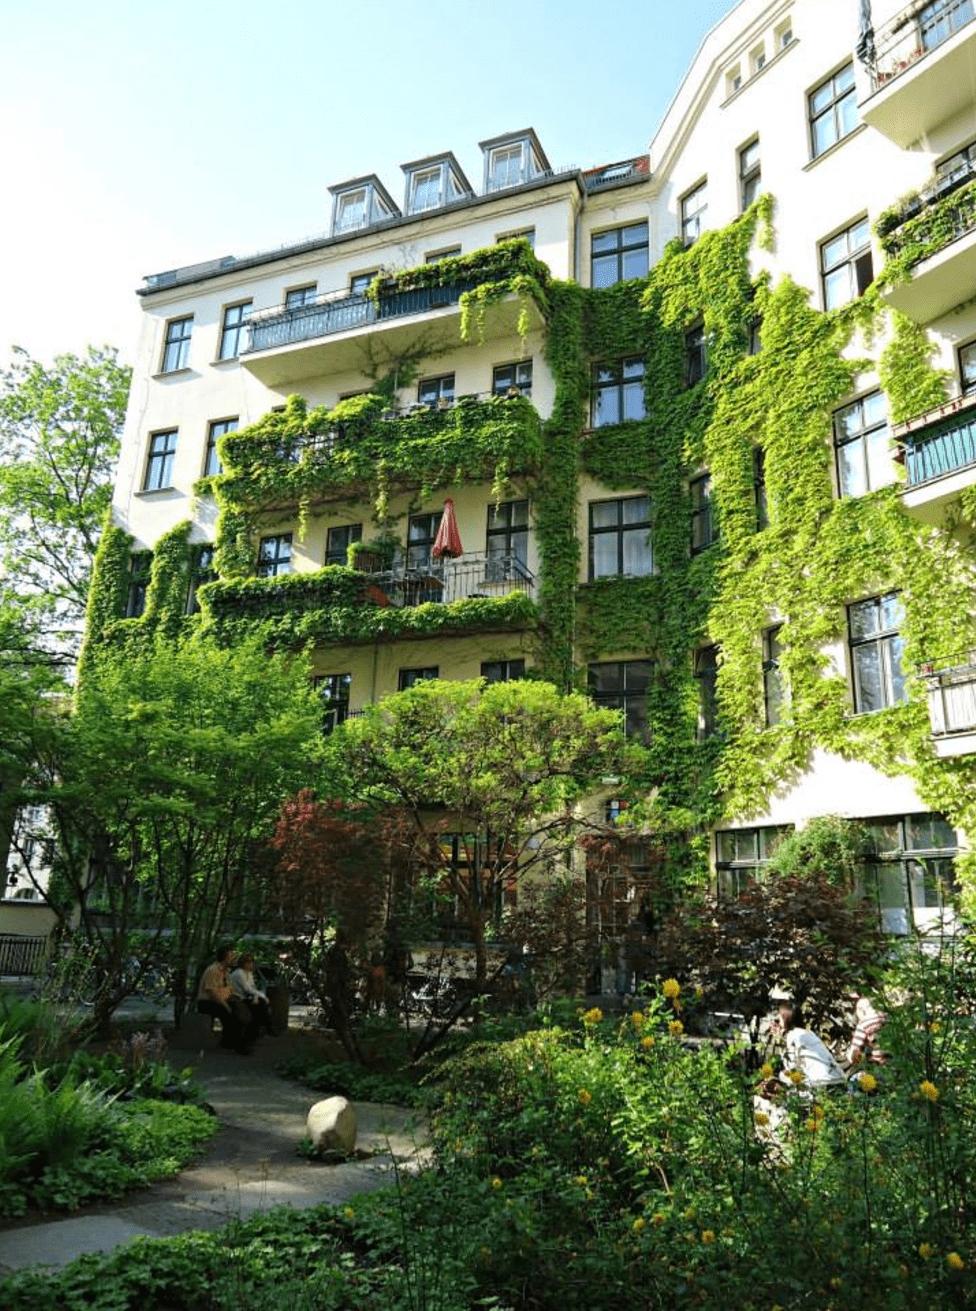 “Die Hackesche Höfe”, an exquisite corner in the middle of Berlin.